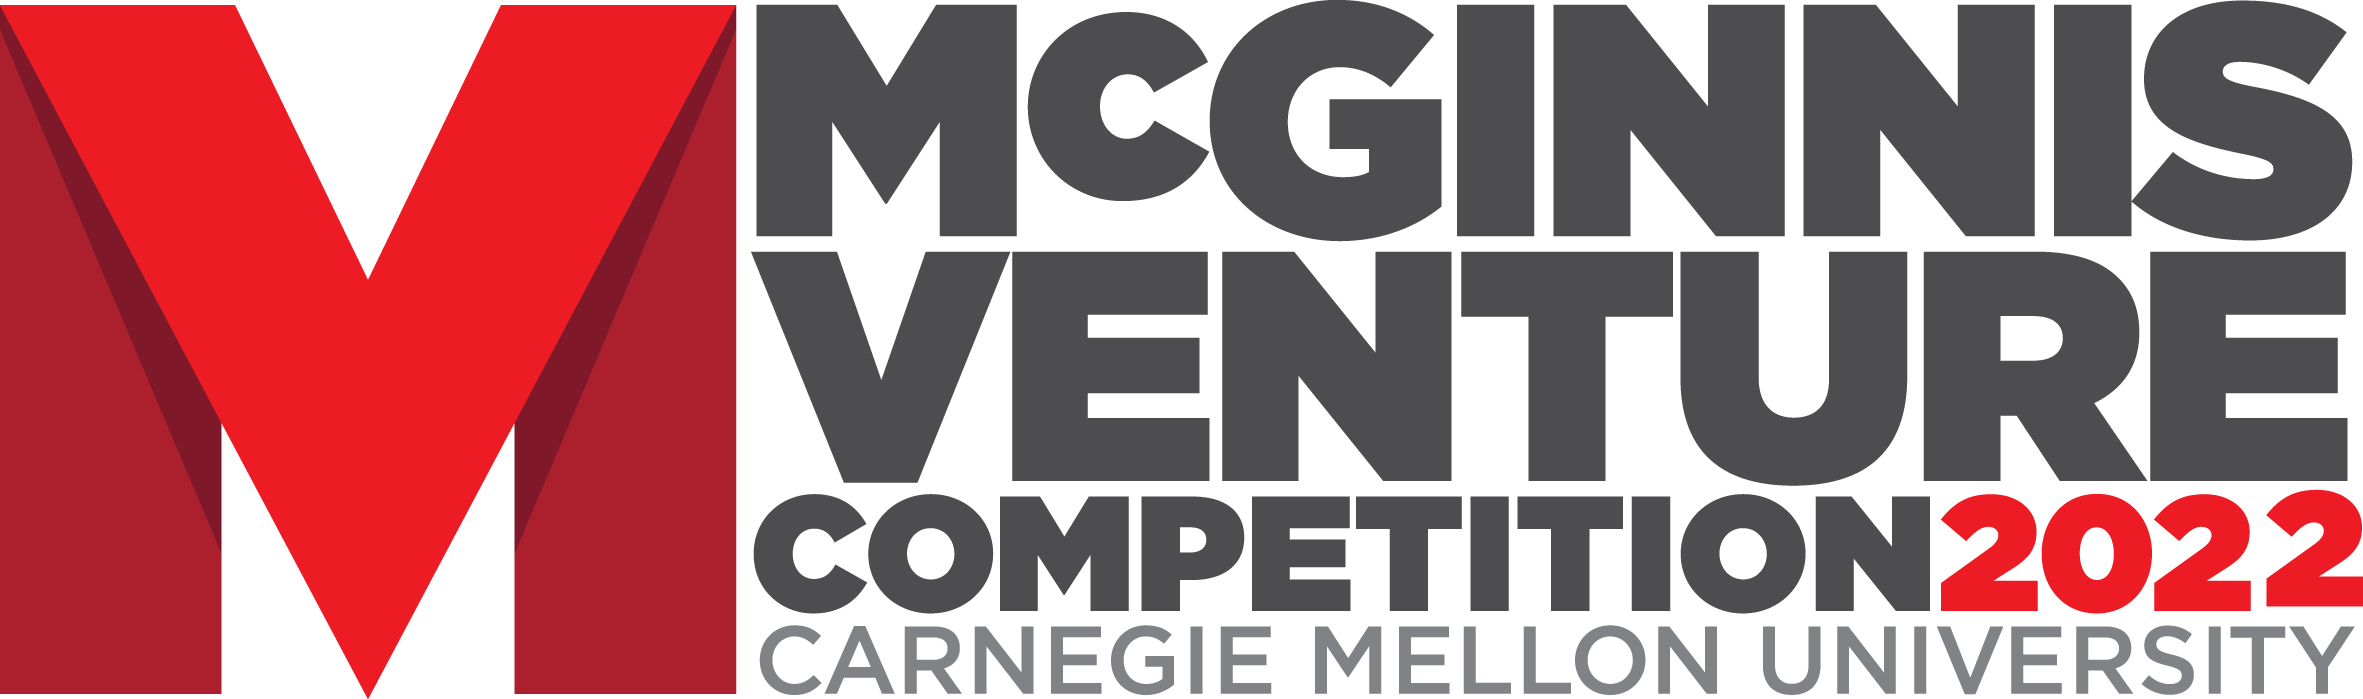 2022 McGinnis Venture Competition